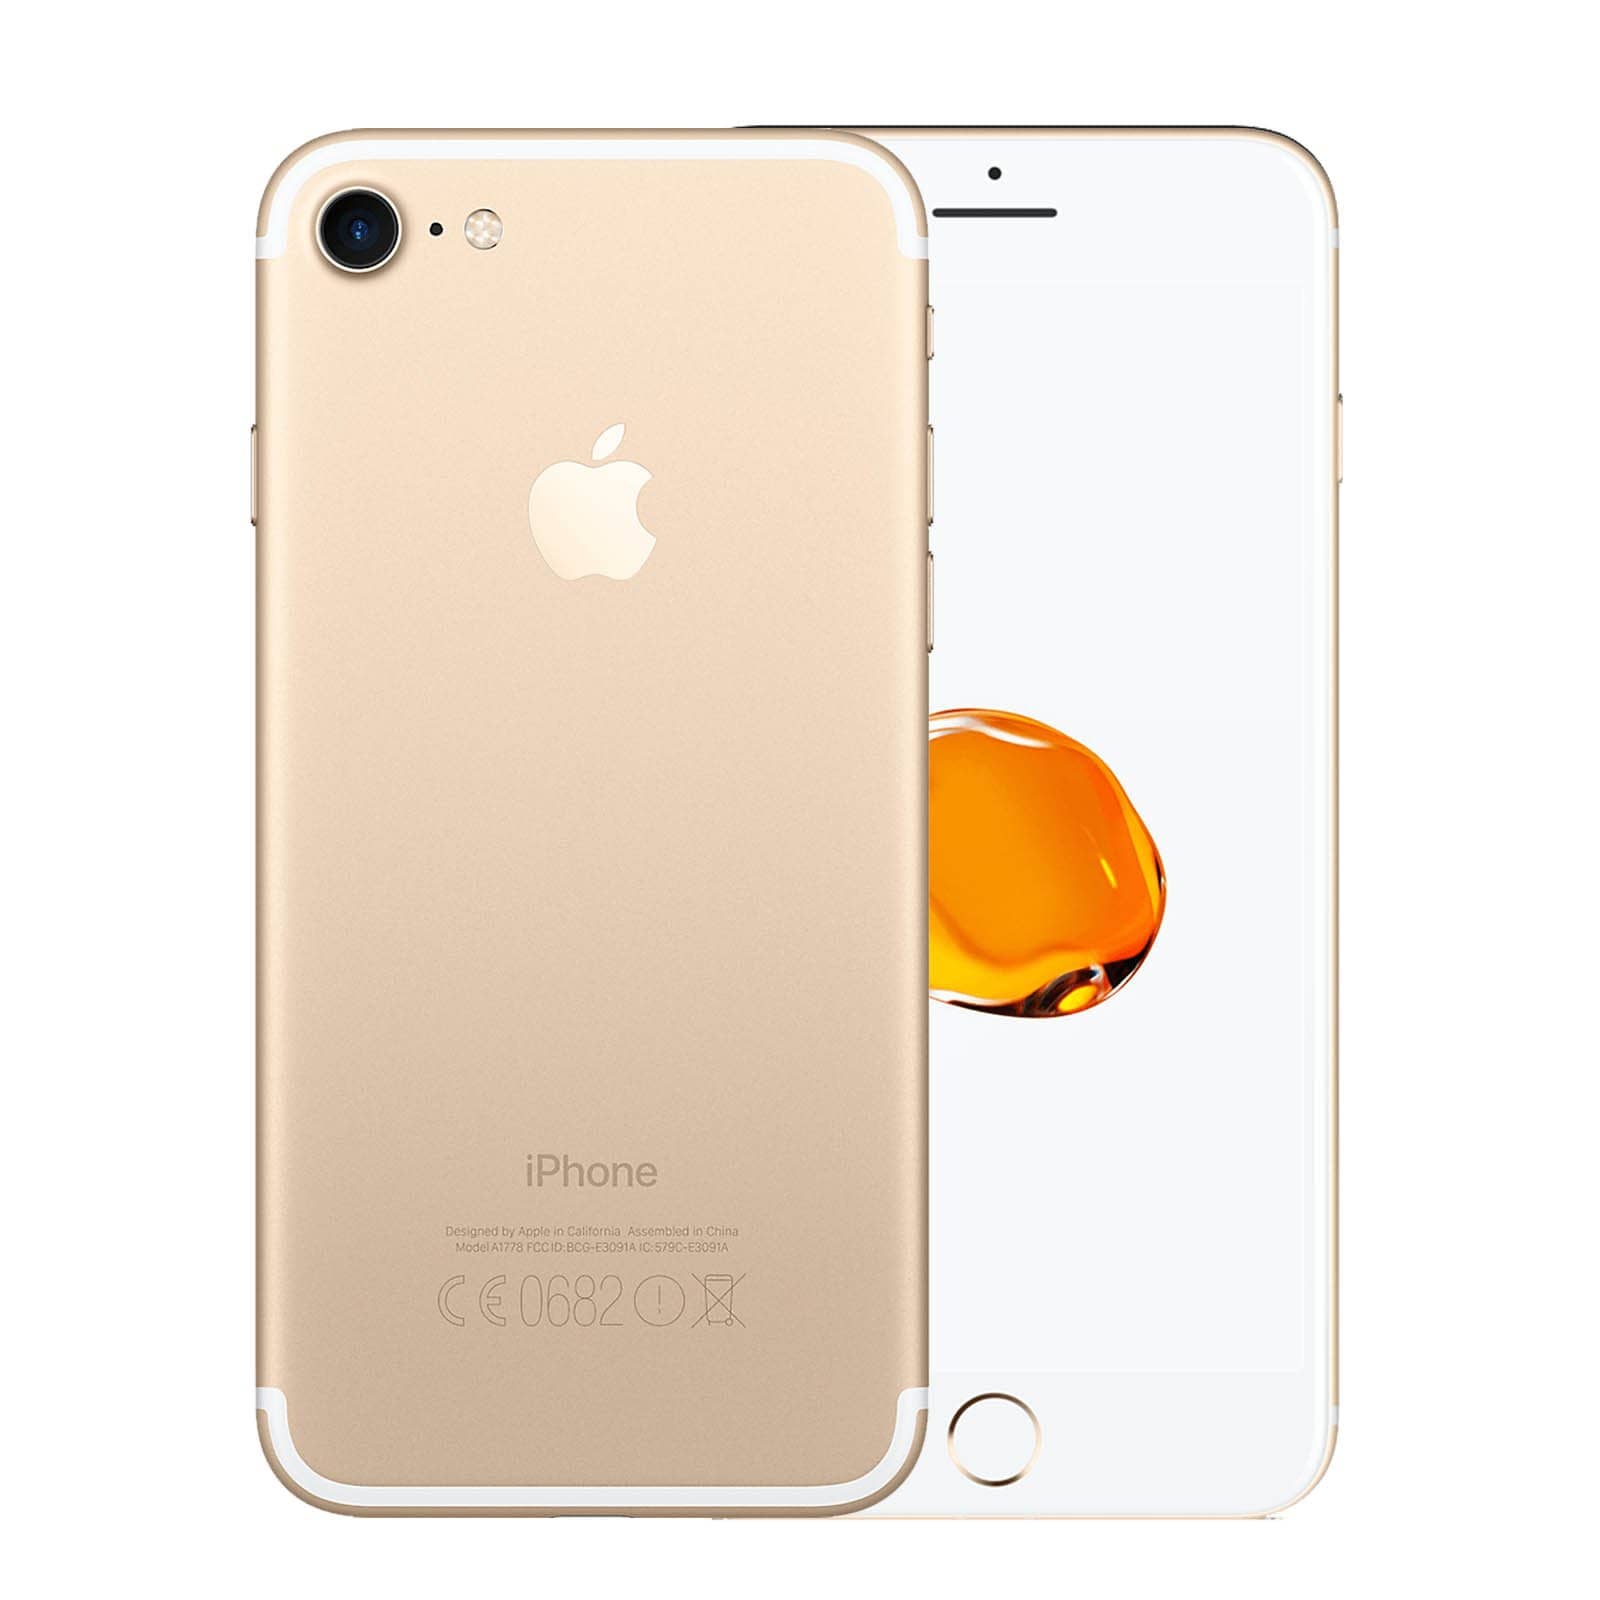 Apple iPhone 7 32GB Gold Fair - Unlocked 32GB Gold Fair